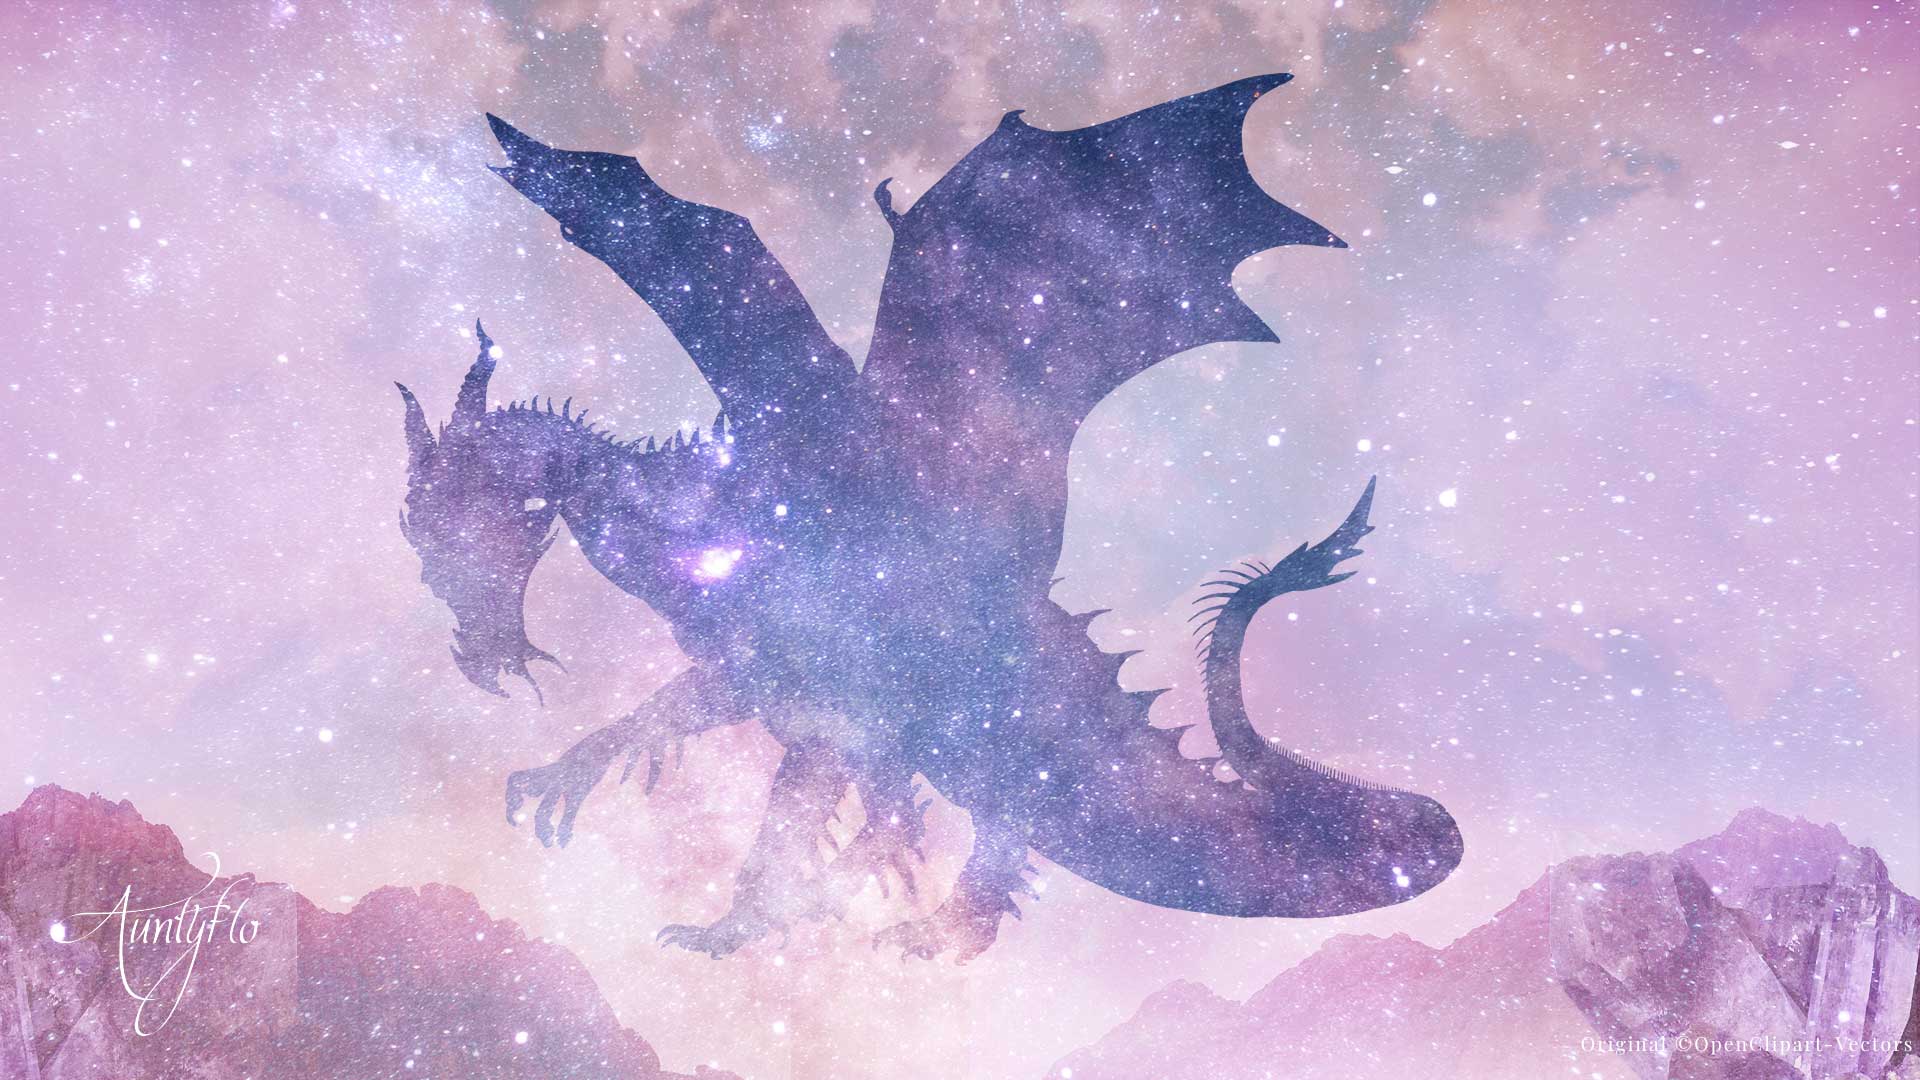 Dream of dragon